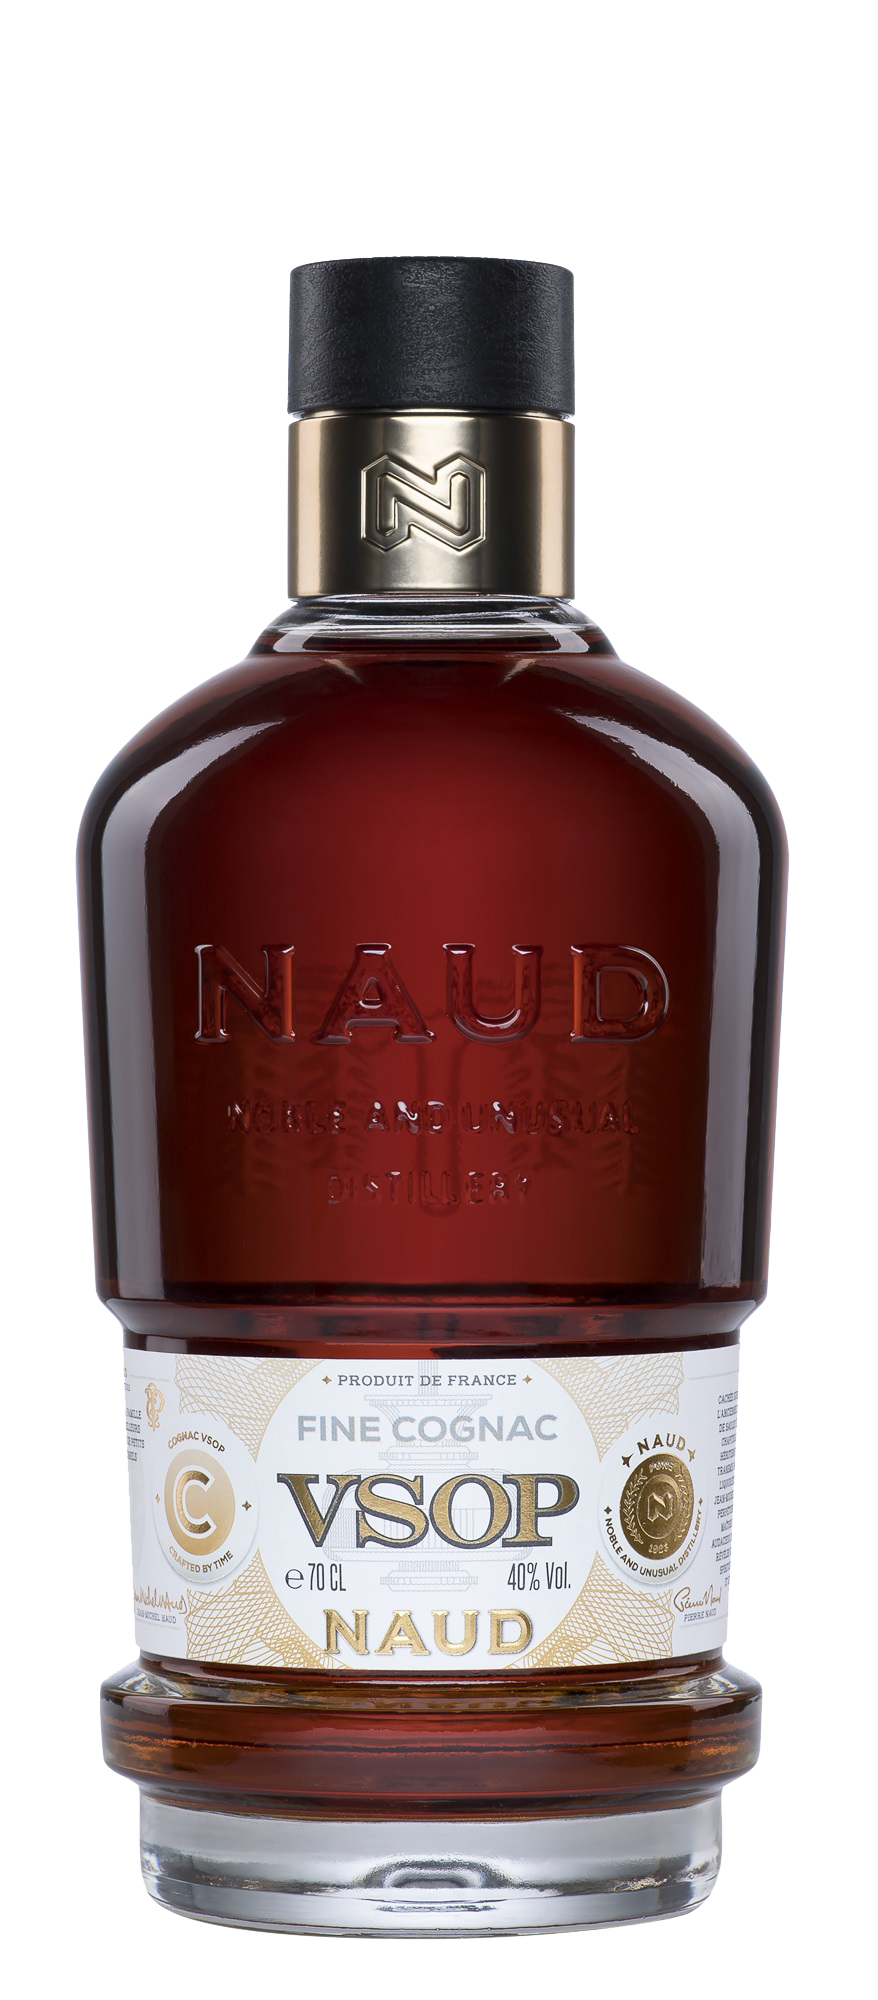 Naud Cognac VSOP - 0,7L 40% vol